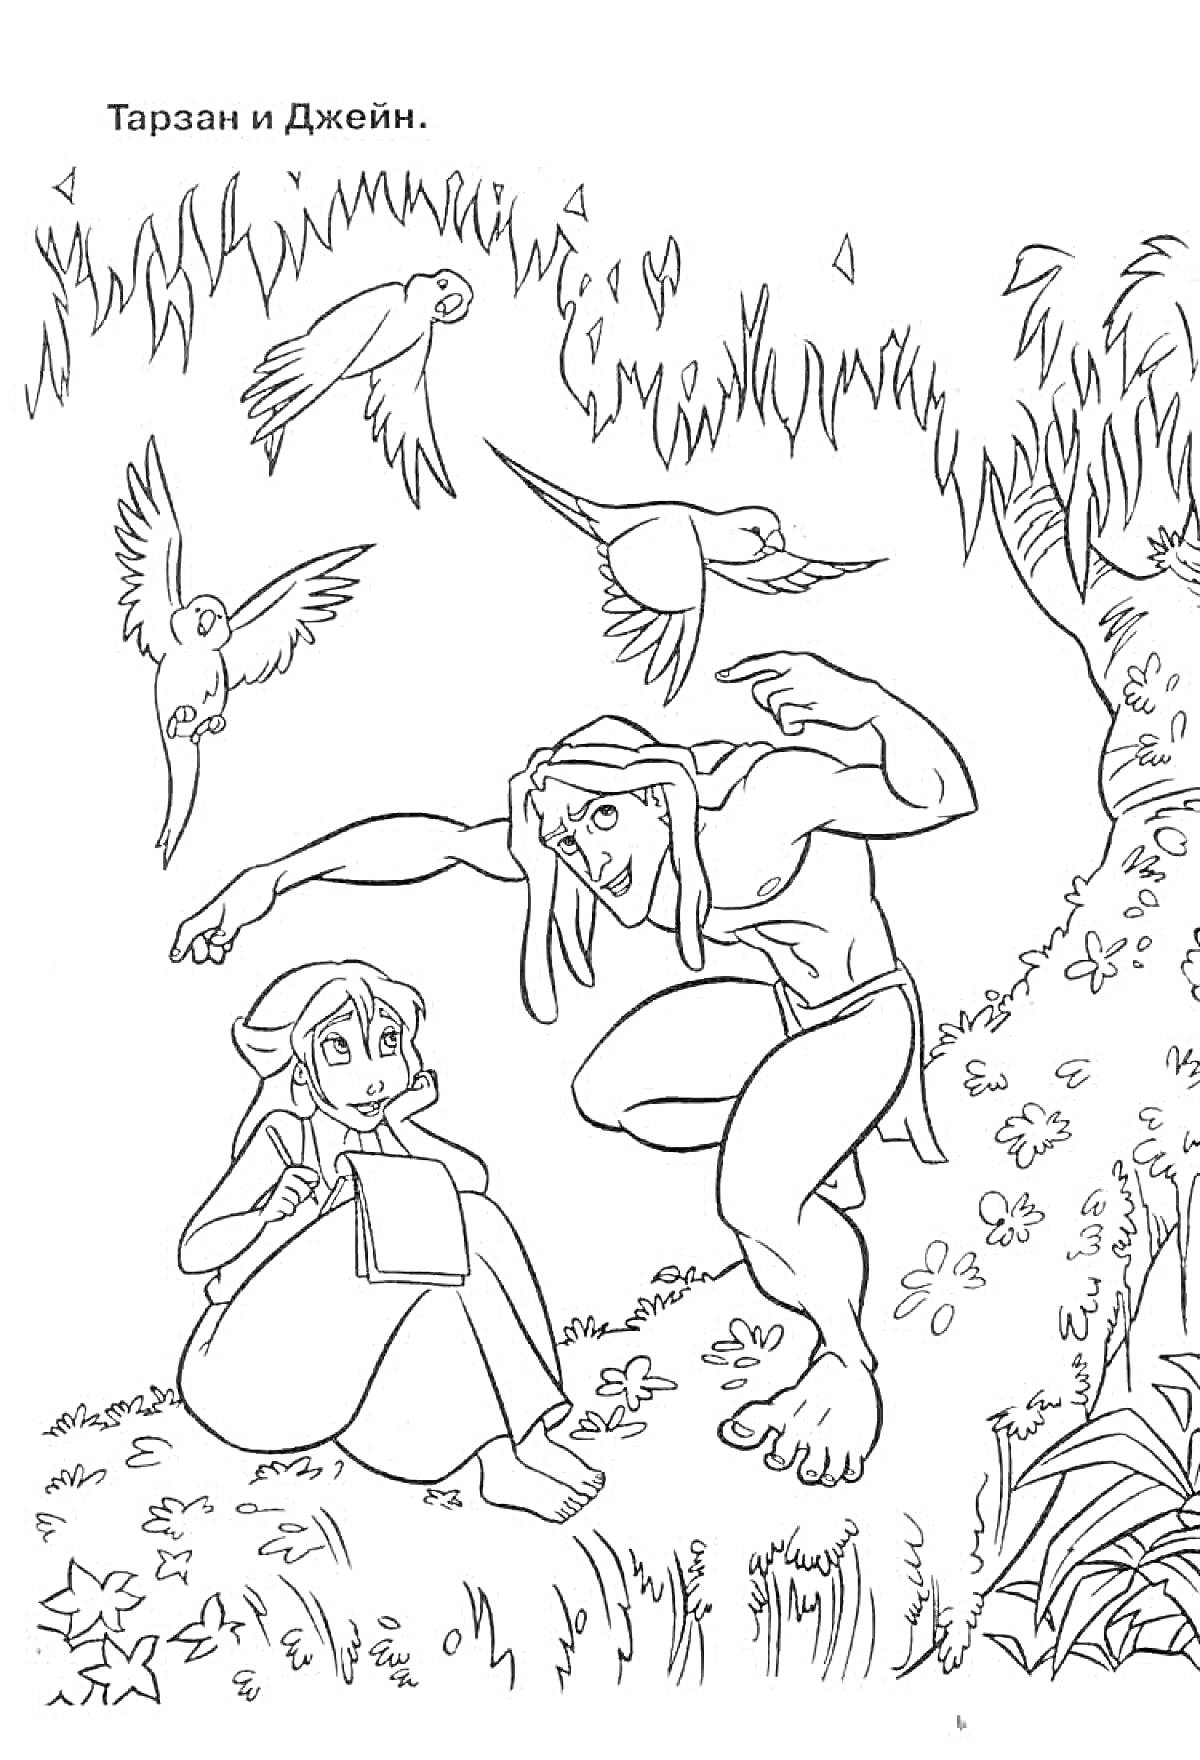 Раскраска Тарзан прячется за деревом, находясь в джунглях с Джейн, которая сидит на земле и рисует, на заднем плане три птицы